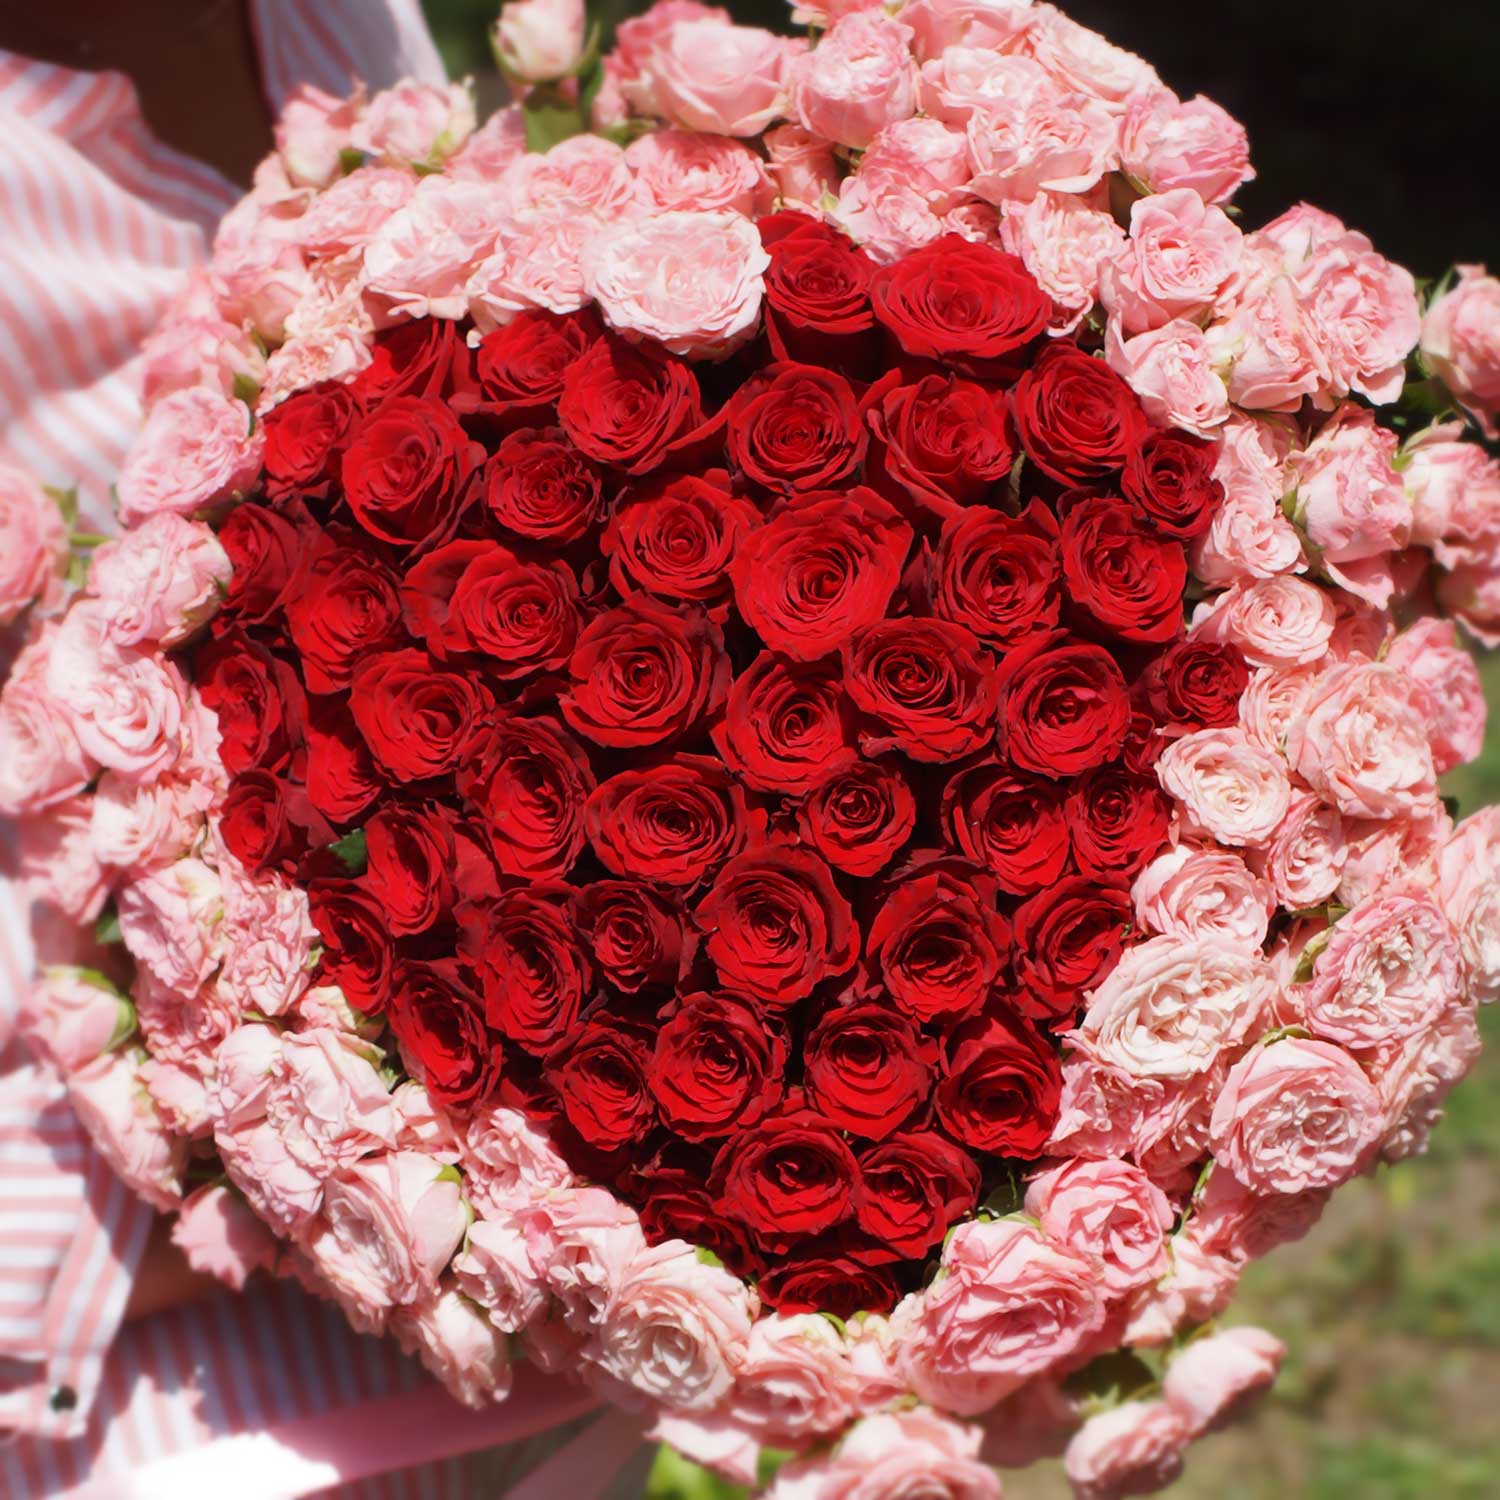 Сердце из роз Мисс Совершенство - Купить цветы